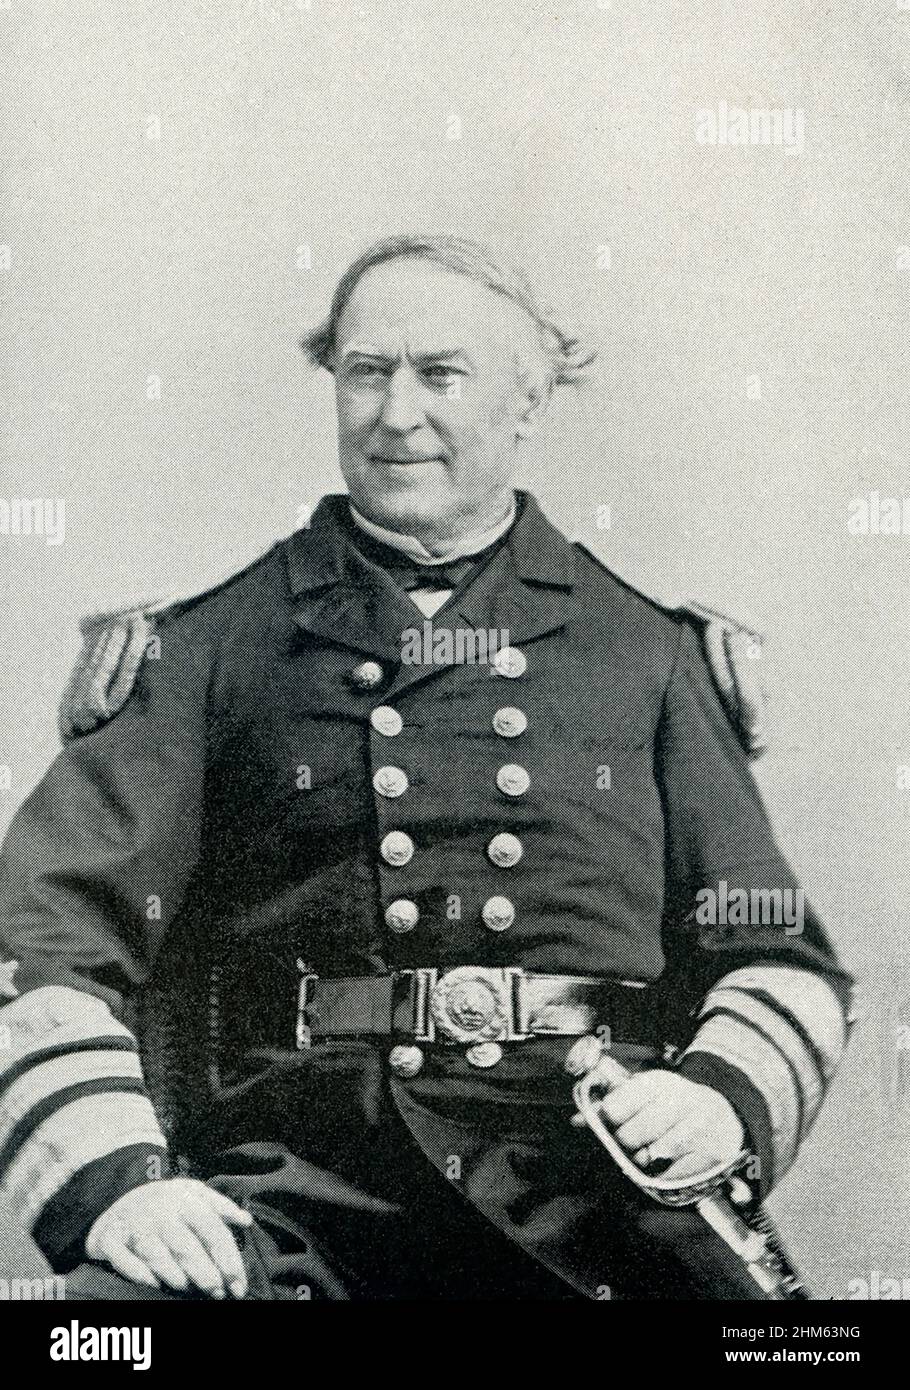 David Glasgow Farragut (mort en 1870) était un officier de drapeau de la Marine américaine pendant la guerre de Sécession.Il a été le premier amiral arrière, vice-amiral et amiral de la Marine des États-Unis. Banque D'Images